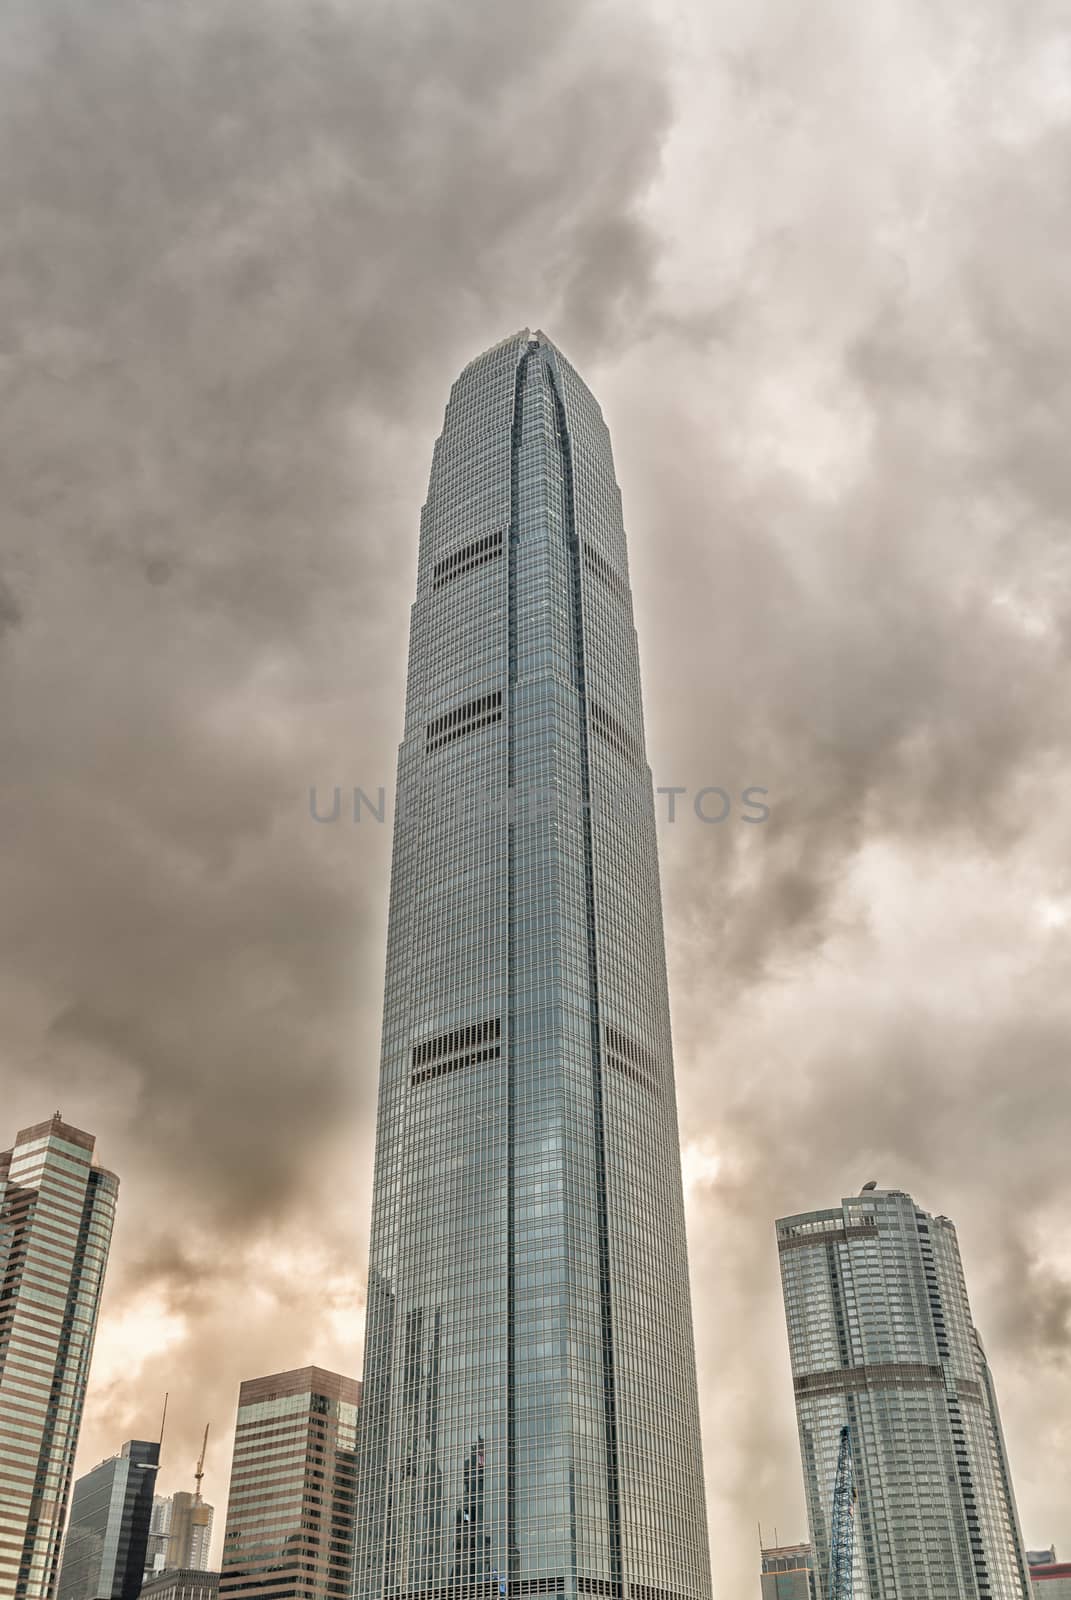 Skyscrapers of Hong Kong.